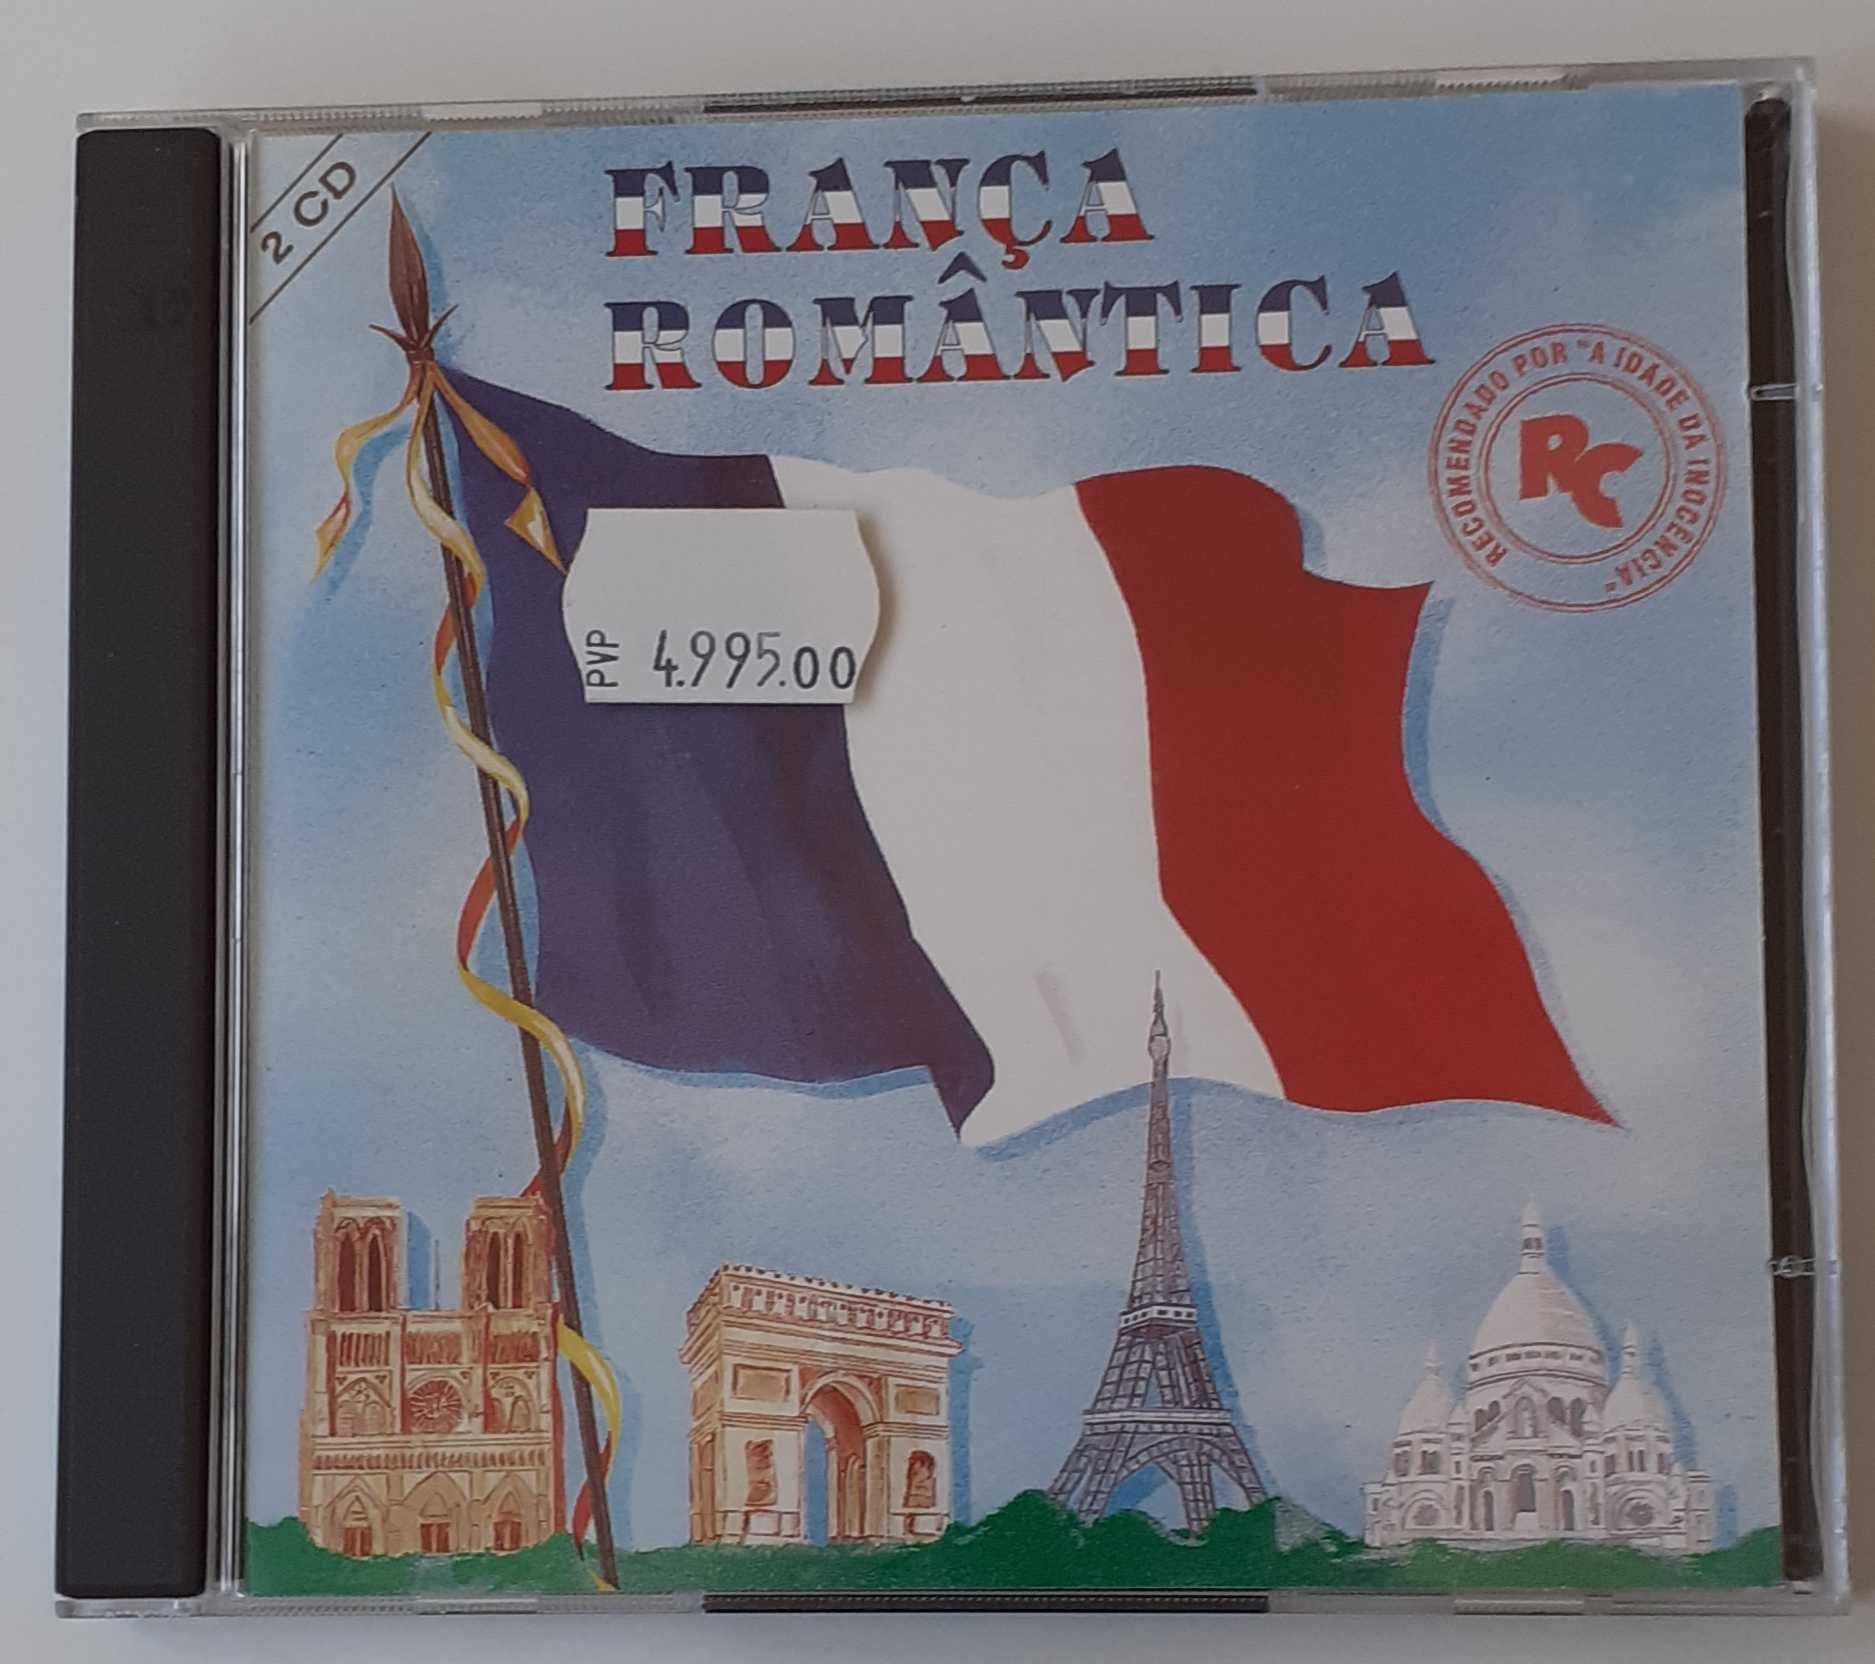 França Romântica - "Vários" CD Duplo